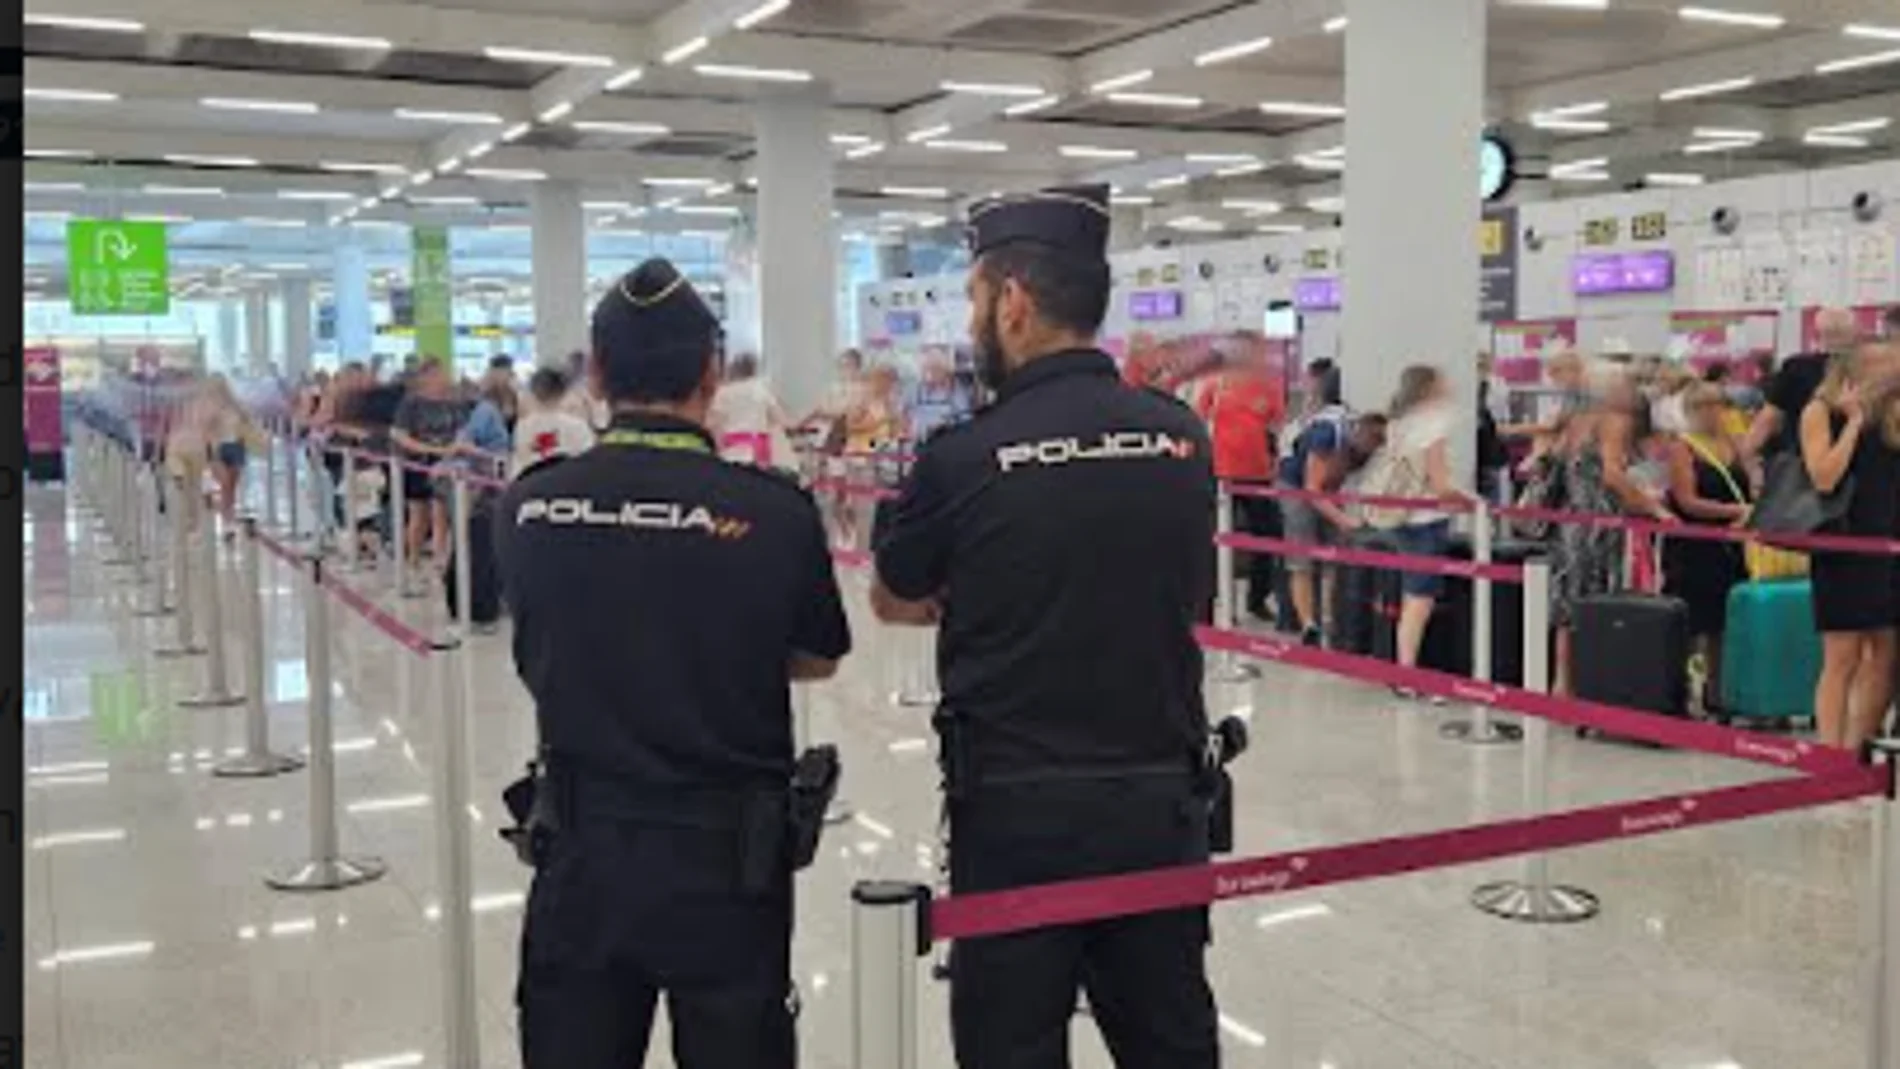 Policía nacionales en el aeropuerto de Palma de Mallorca